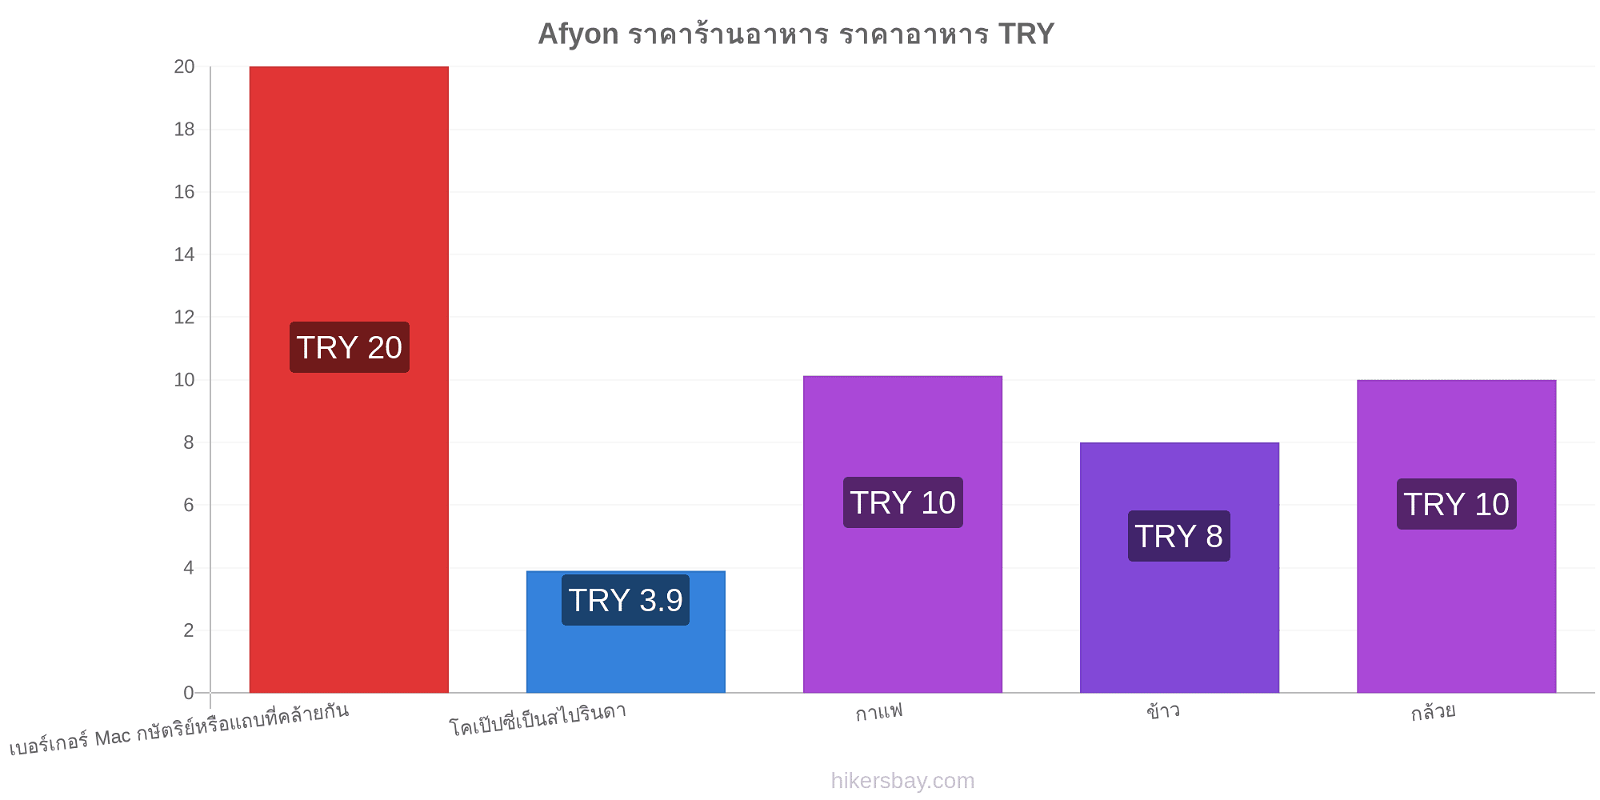 Afyon การเปลี่ยนแปลงราคา hikersbay.com